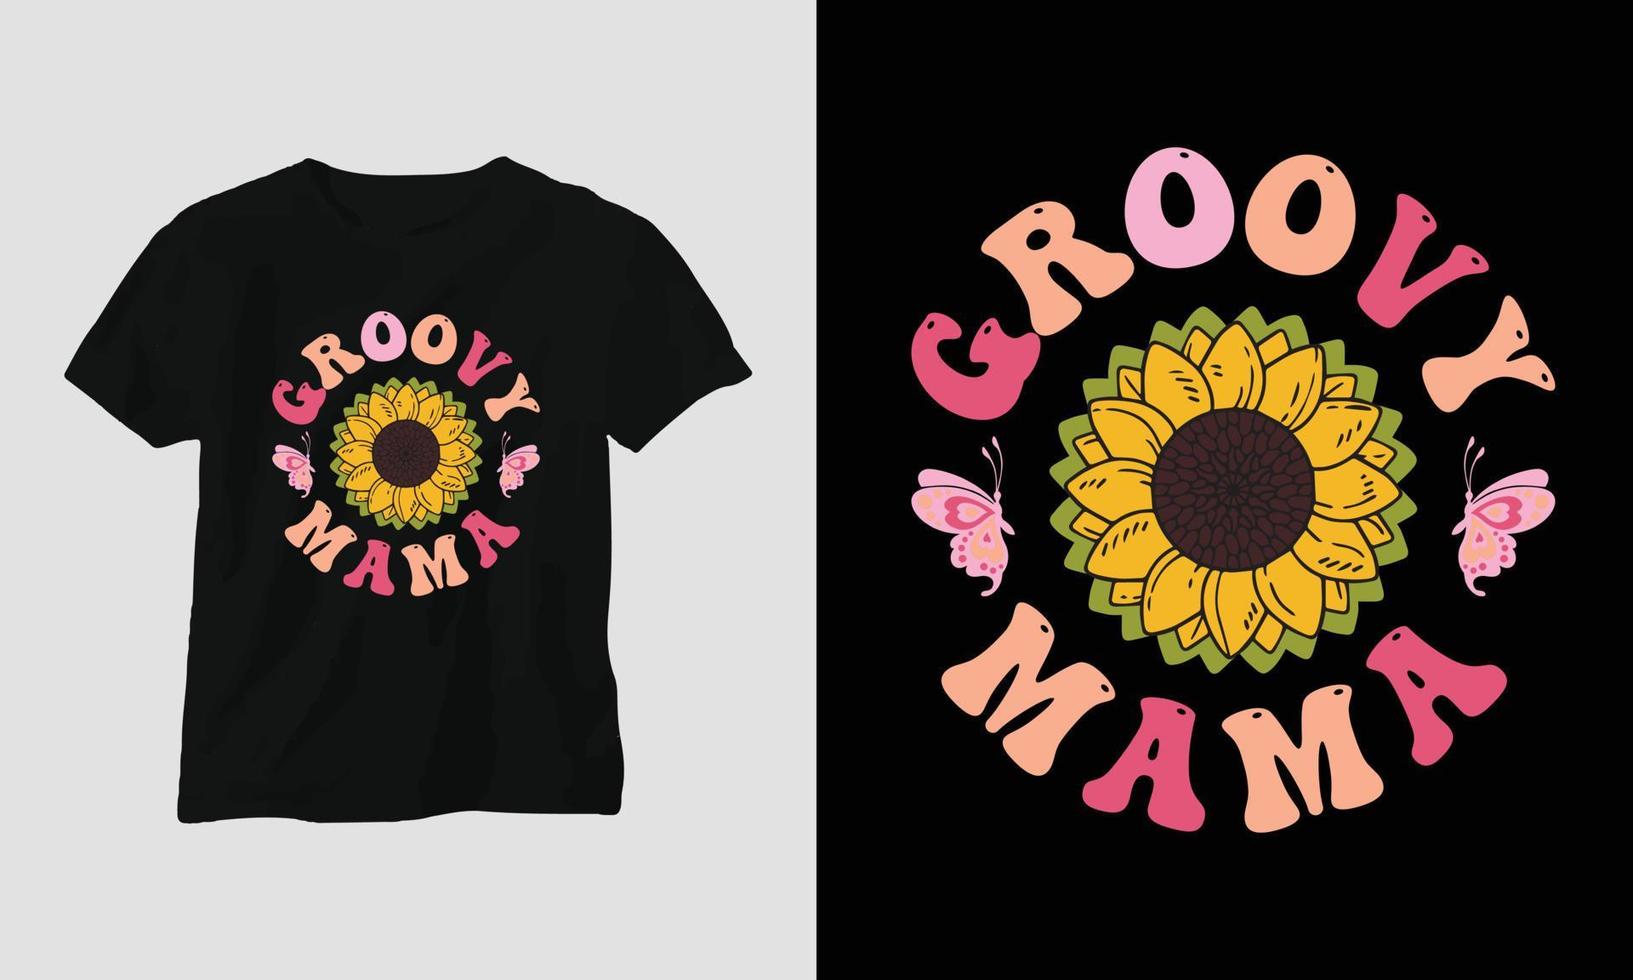 groovy mama - mam golvend retro groovy t-shirt vector